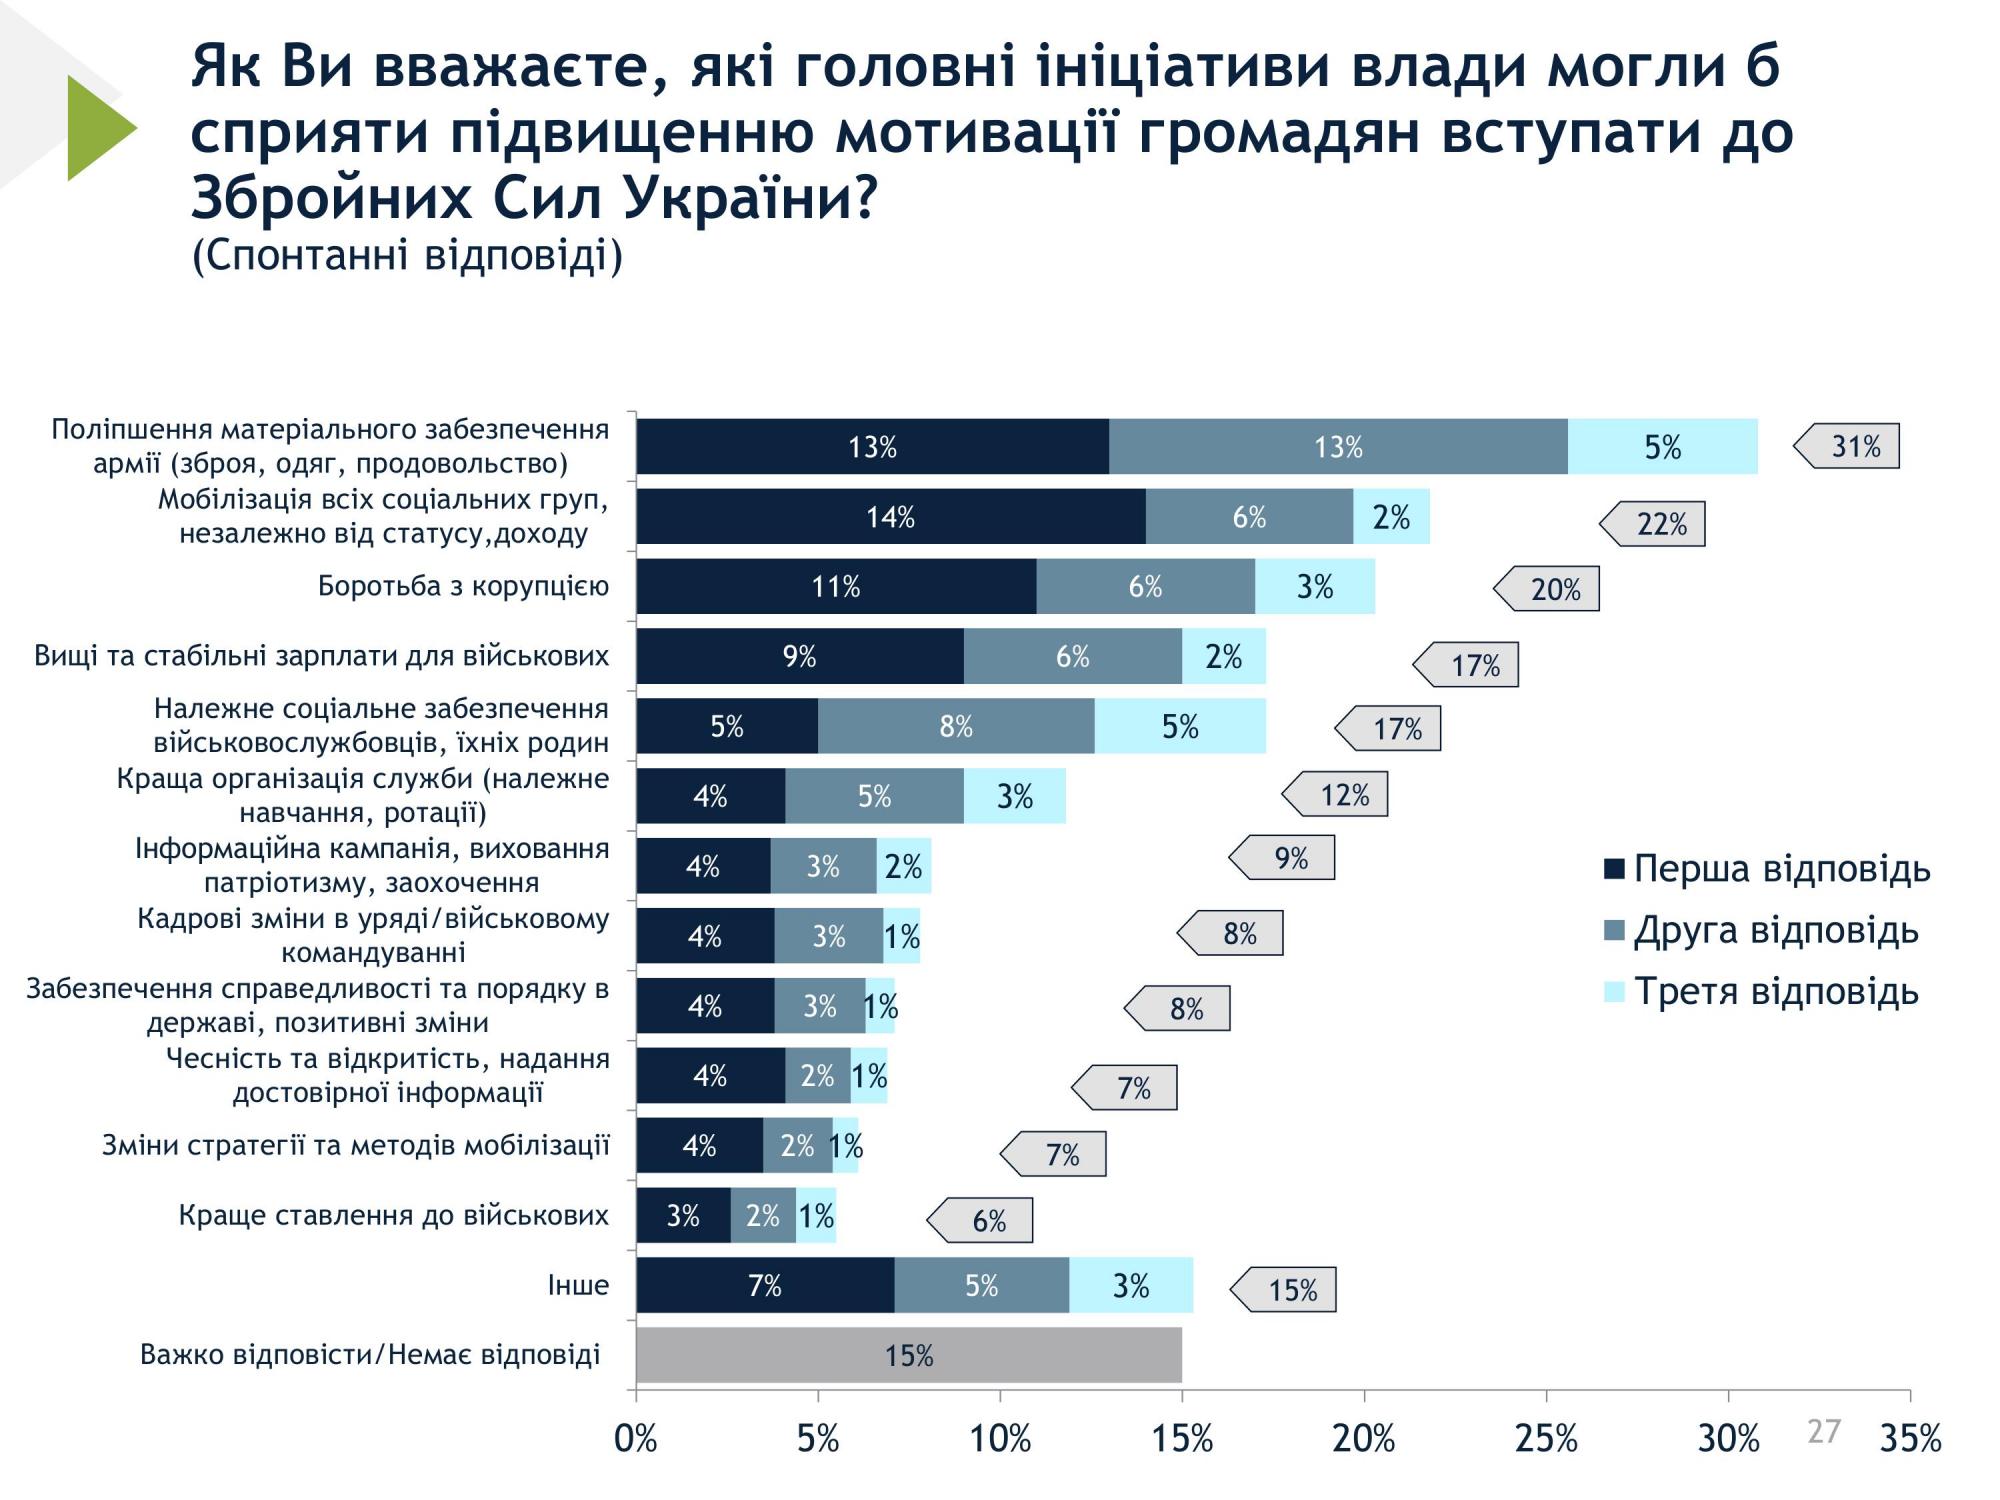 Занадто високий, оптимальний чи недостатній: українці оцінили рівень мобілізації